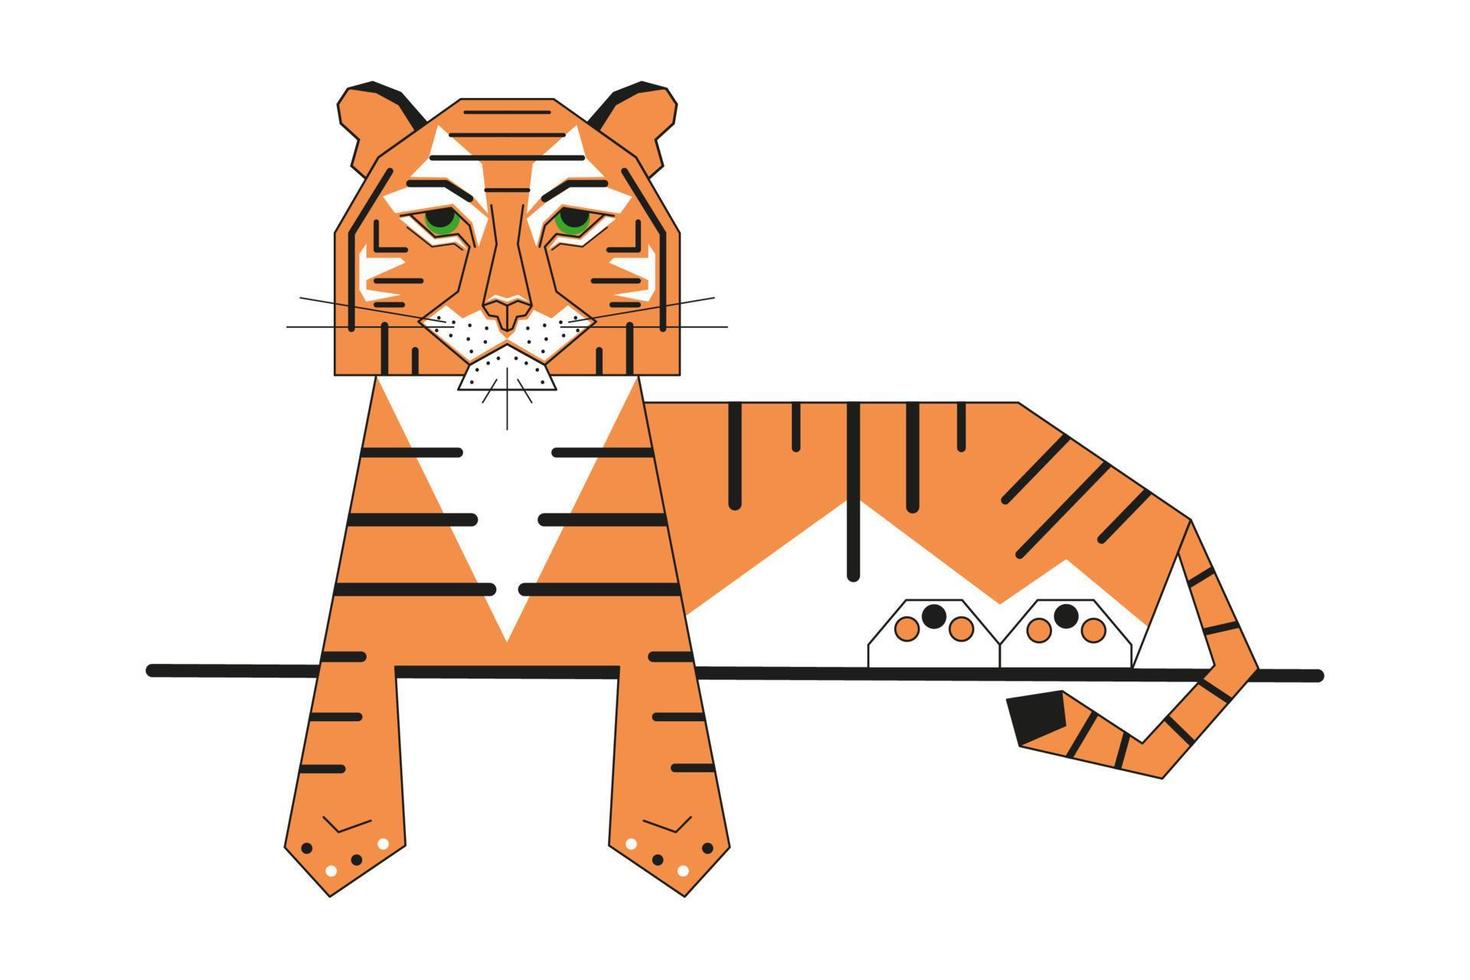 abstracte geometrische tijger is het symbool van het chinese nieuwe jaar. dier liggend op een tak. moderne grafische vormgeving. Aziatische afdrukken. vectorillustratie geïsoleerd op een witte achtergrond vector